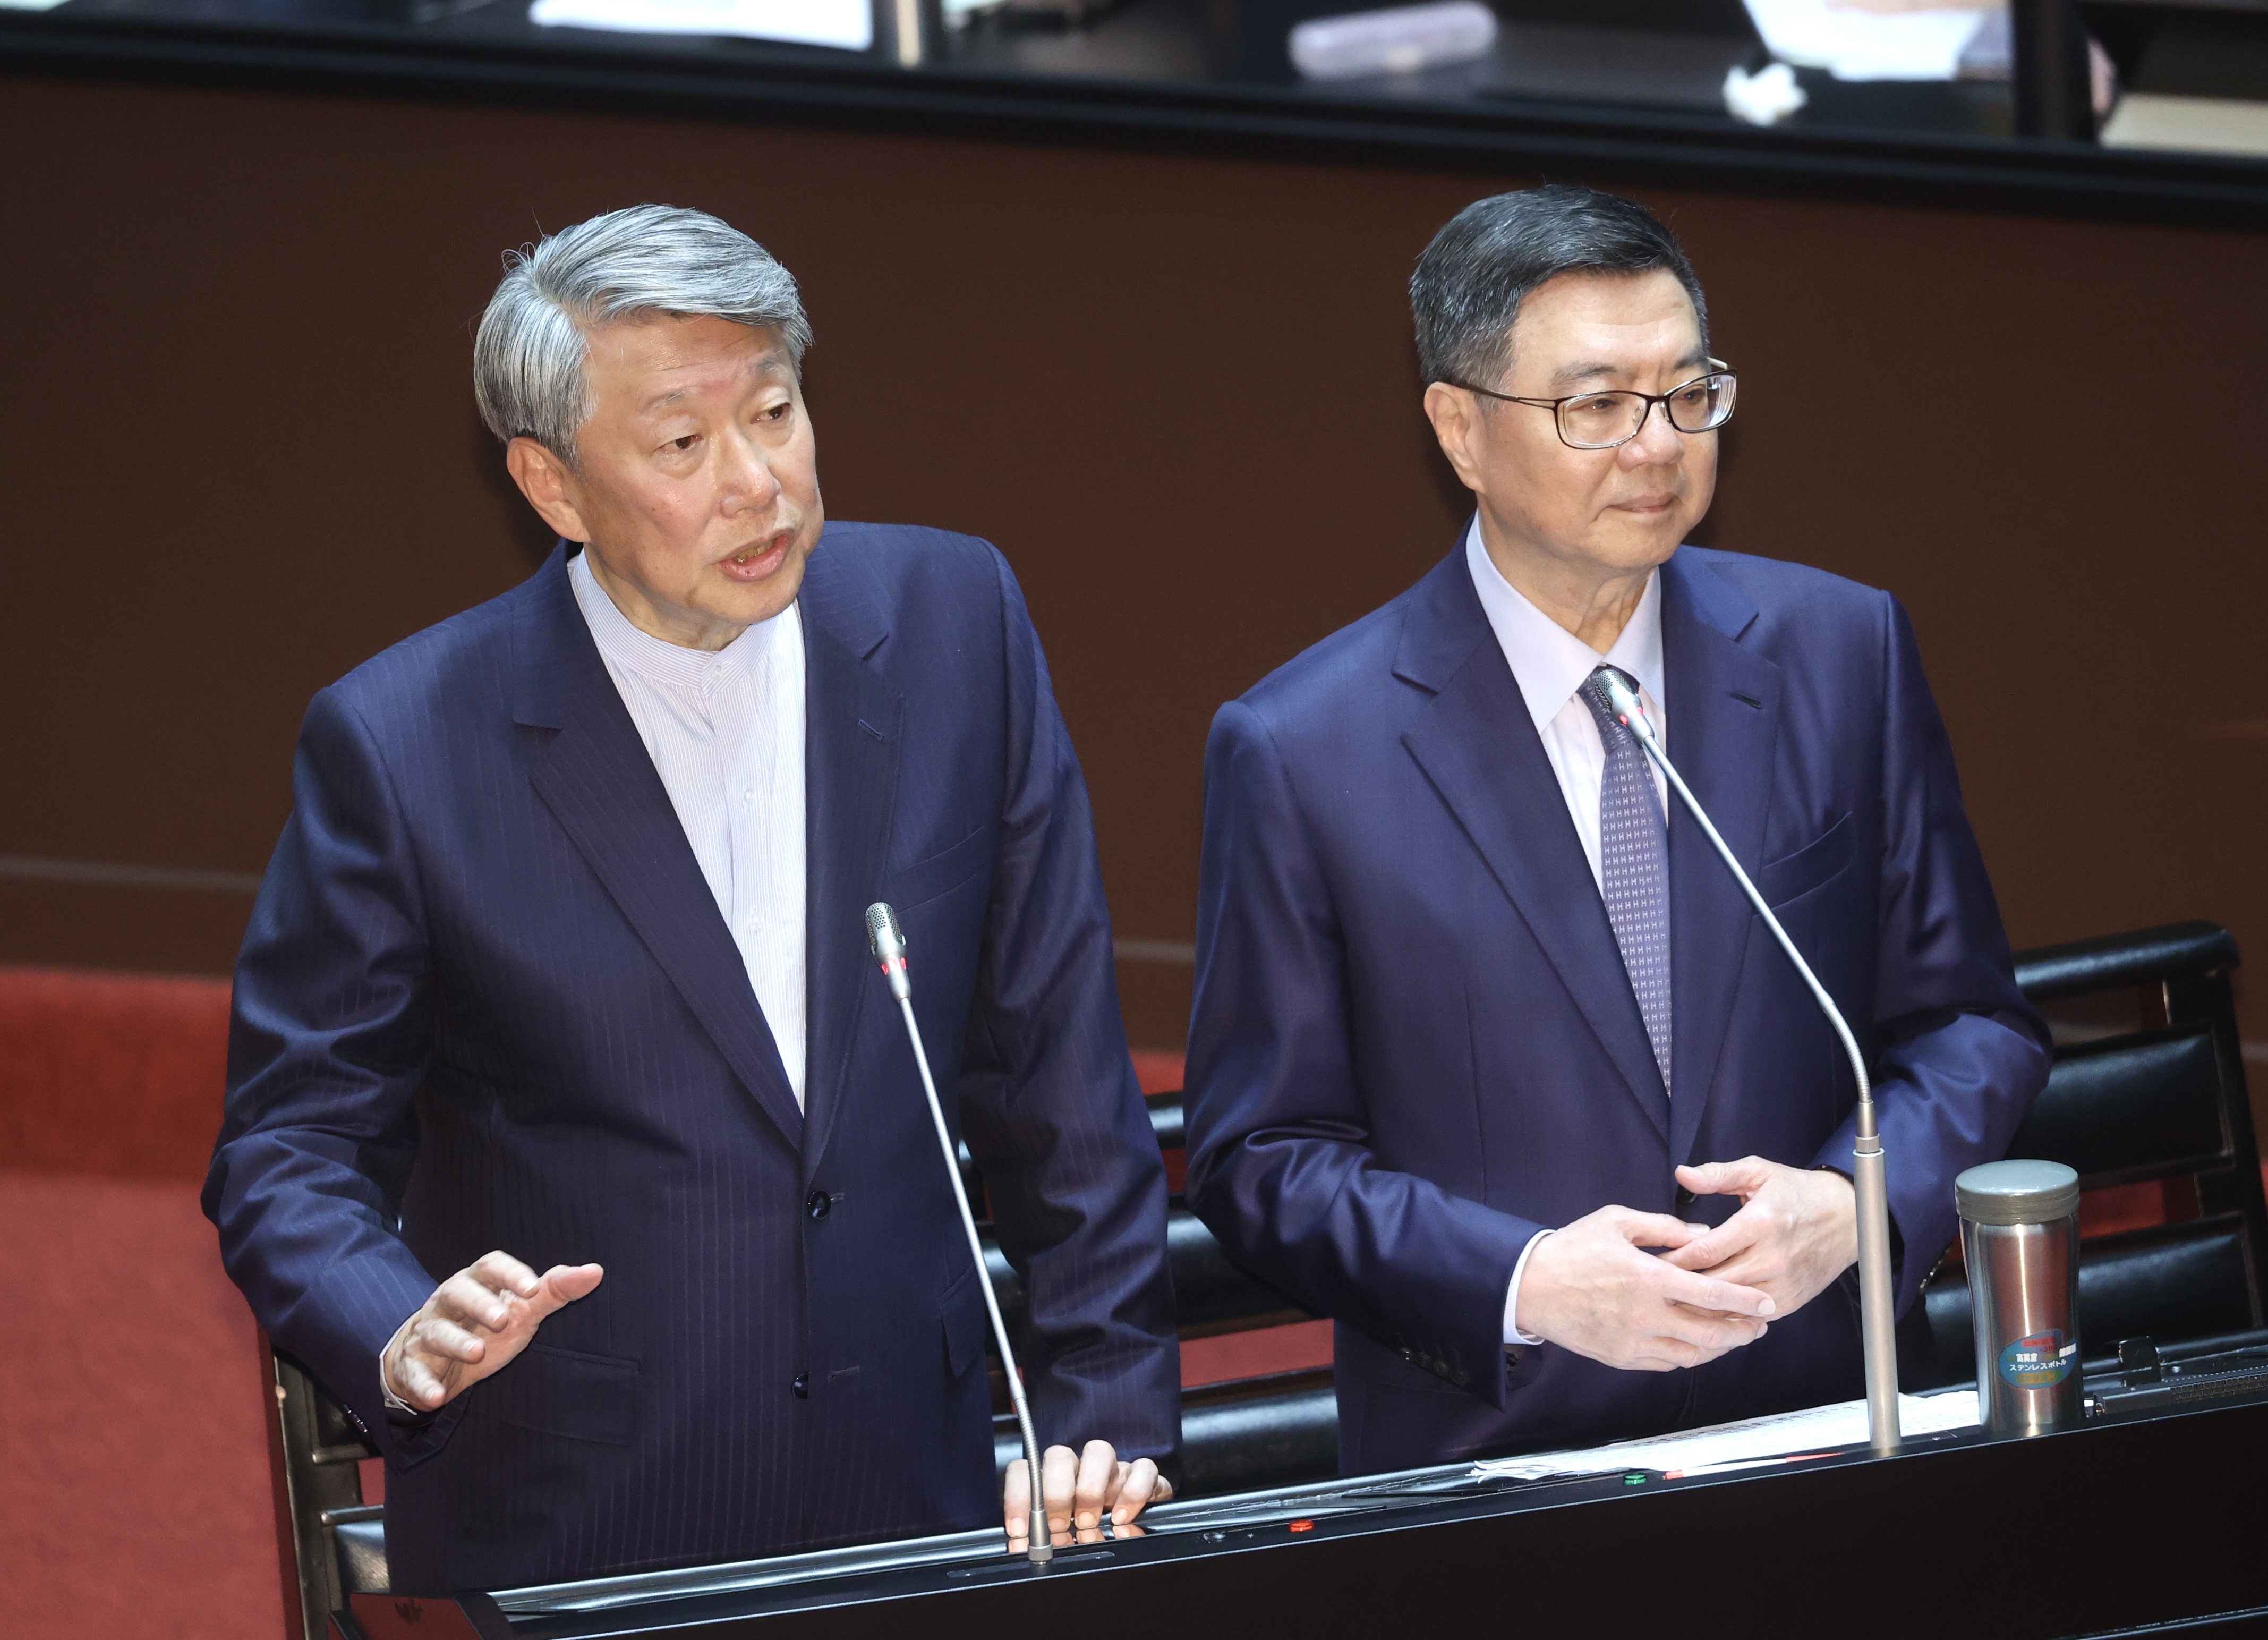 行政院长卓荣泰（右）与经济部长郭智辉（左）列席备询。记者曾吉松／摄影